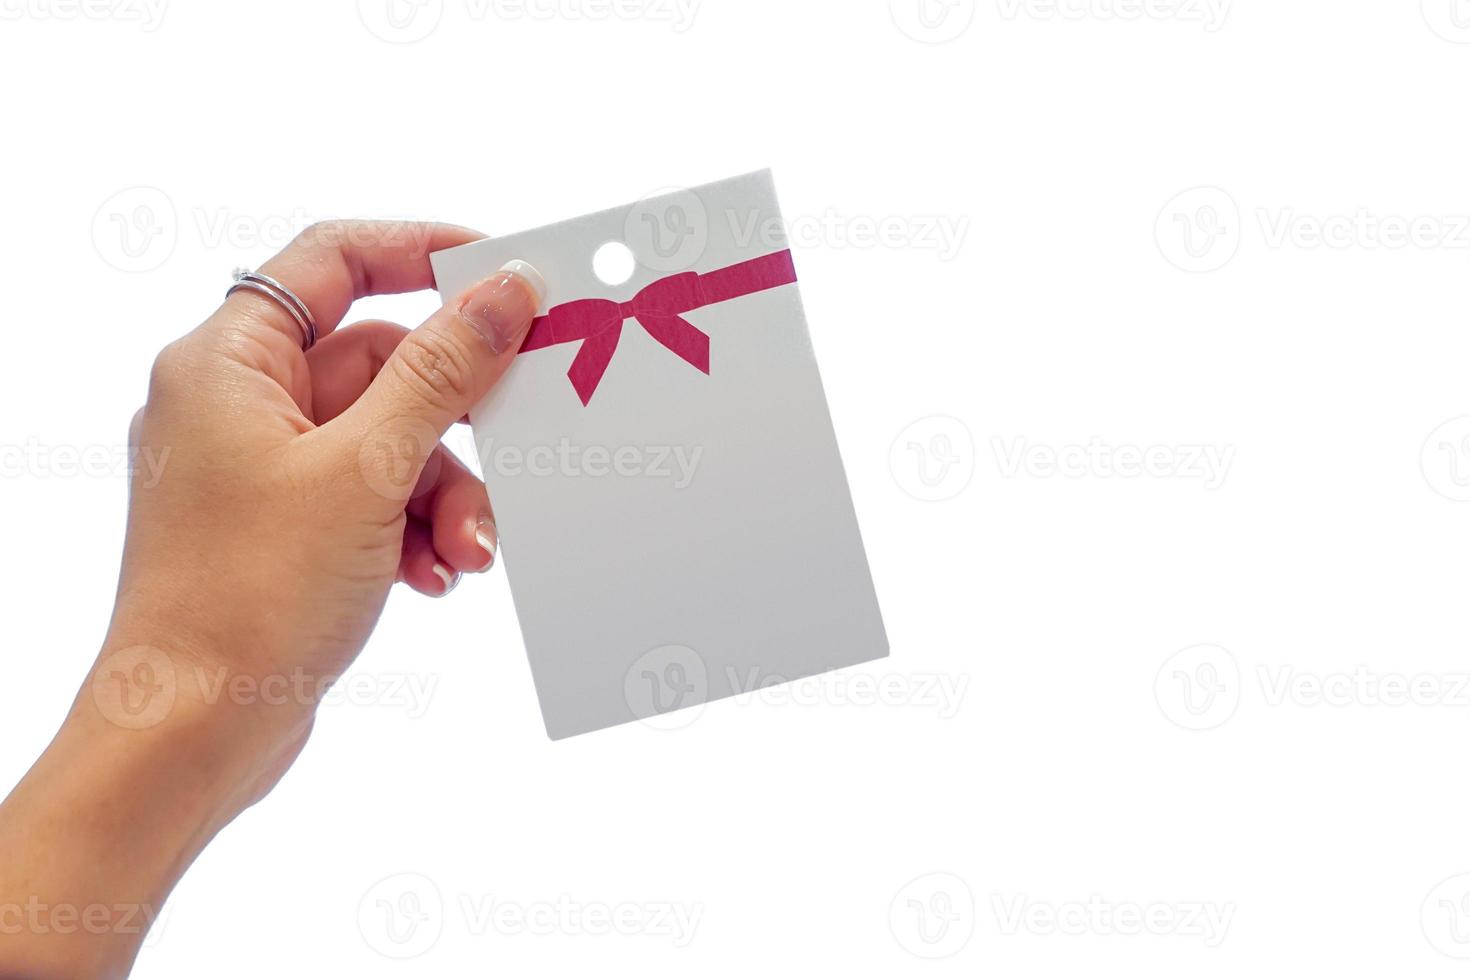 mano della donna che tiene la carta di carta bianca con motivo a fiocco rosso su di essa. è isolare l'immagine sullo schermo bianco. foto